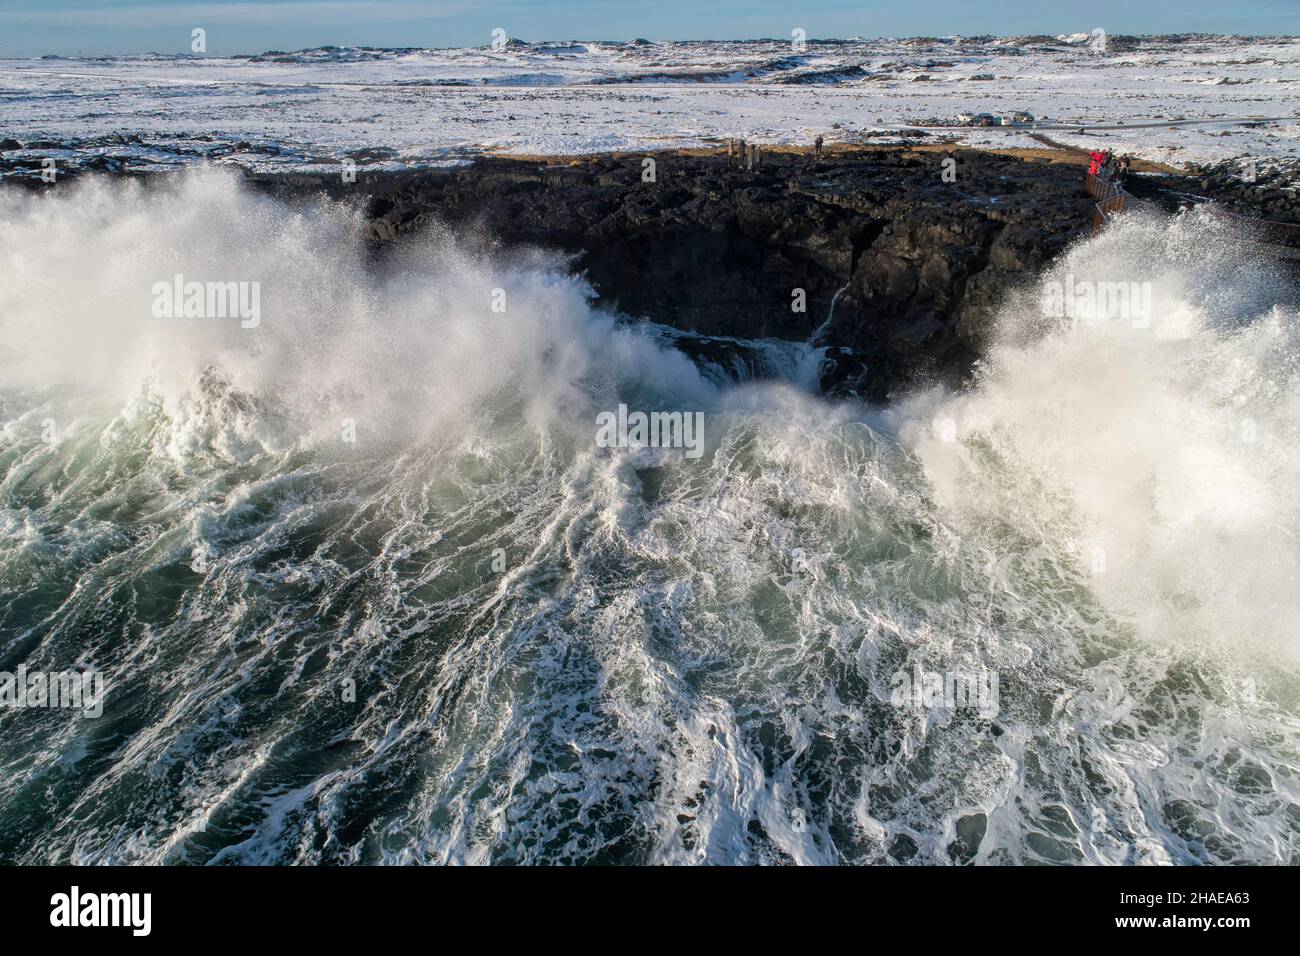 Disparo aéreo de las enormes olas del océano rompiendo en una orilla rocosa, grupo de turistas mirándolos muy pequeños en comparación. Foto de stock